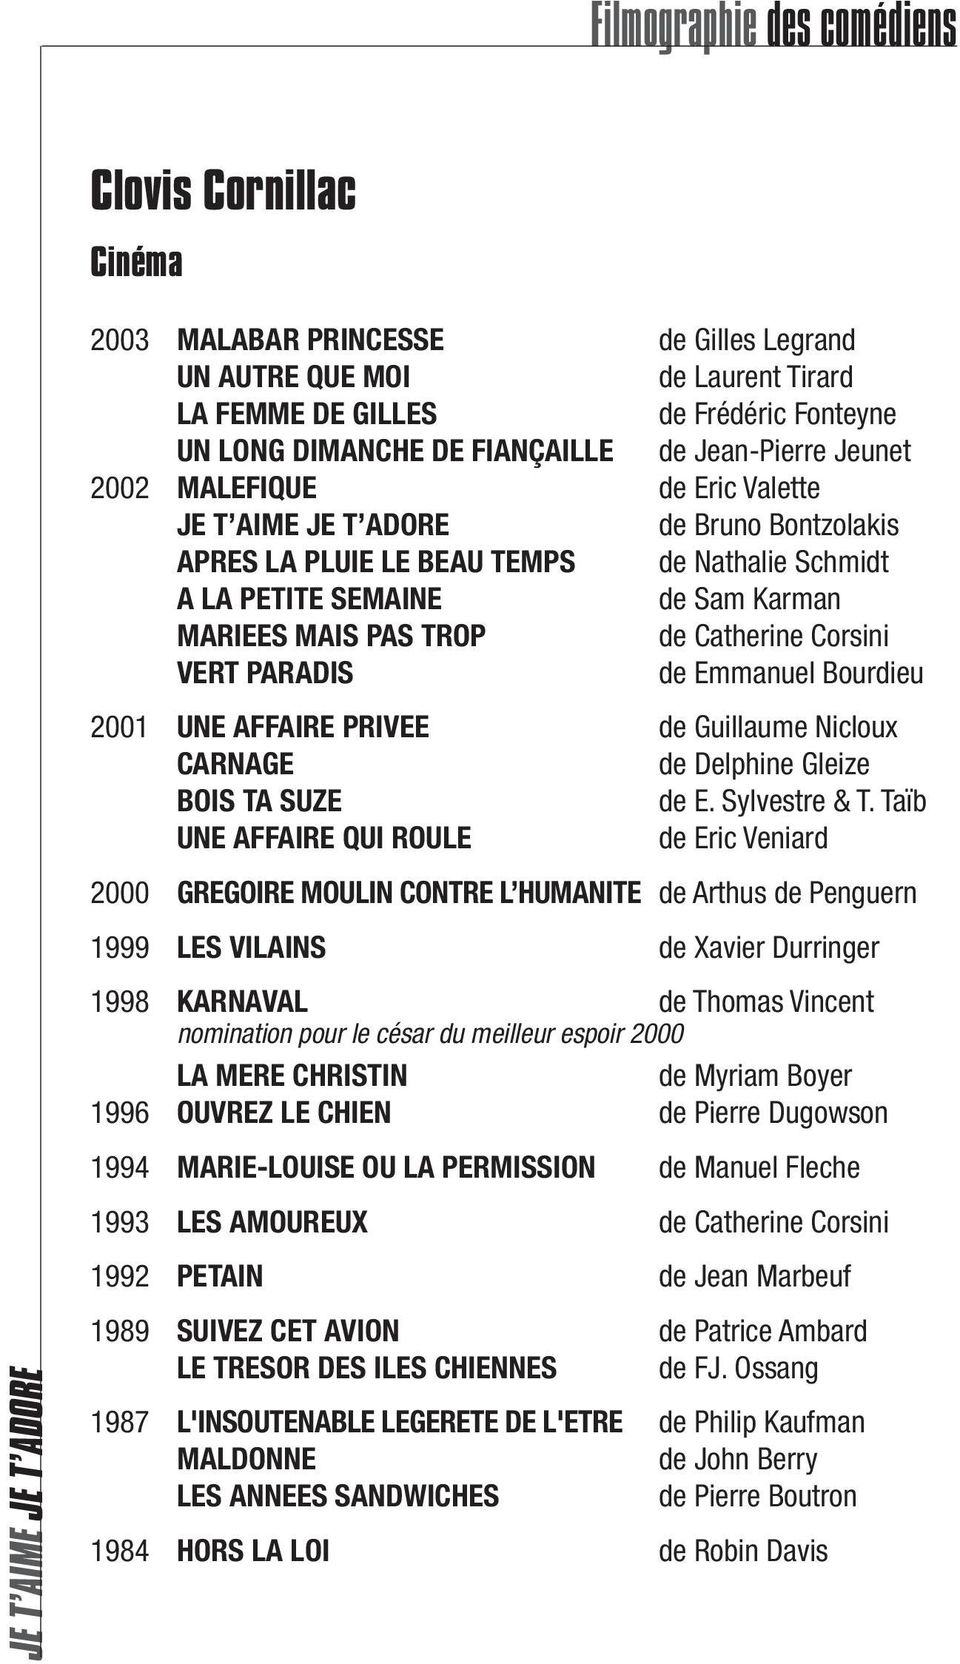 VERT PARADIS de Emmanuel Bourdieu 2001 UNE AFFAIRE PRIVEE de Guillaume Nicloux CARNAGE de Delphine Gleize BOIS TA SUZE de E. Sylvestre & T.